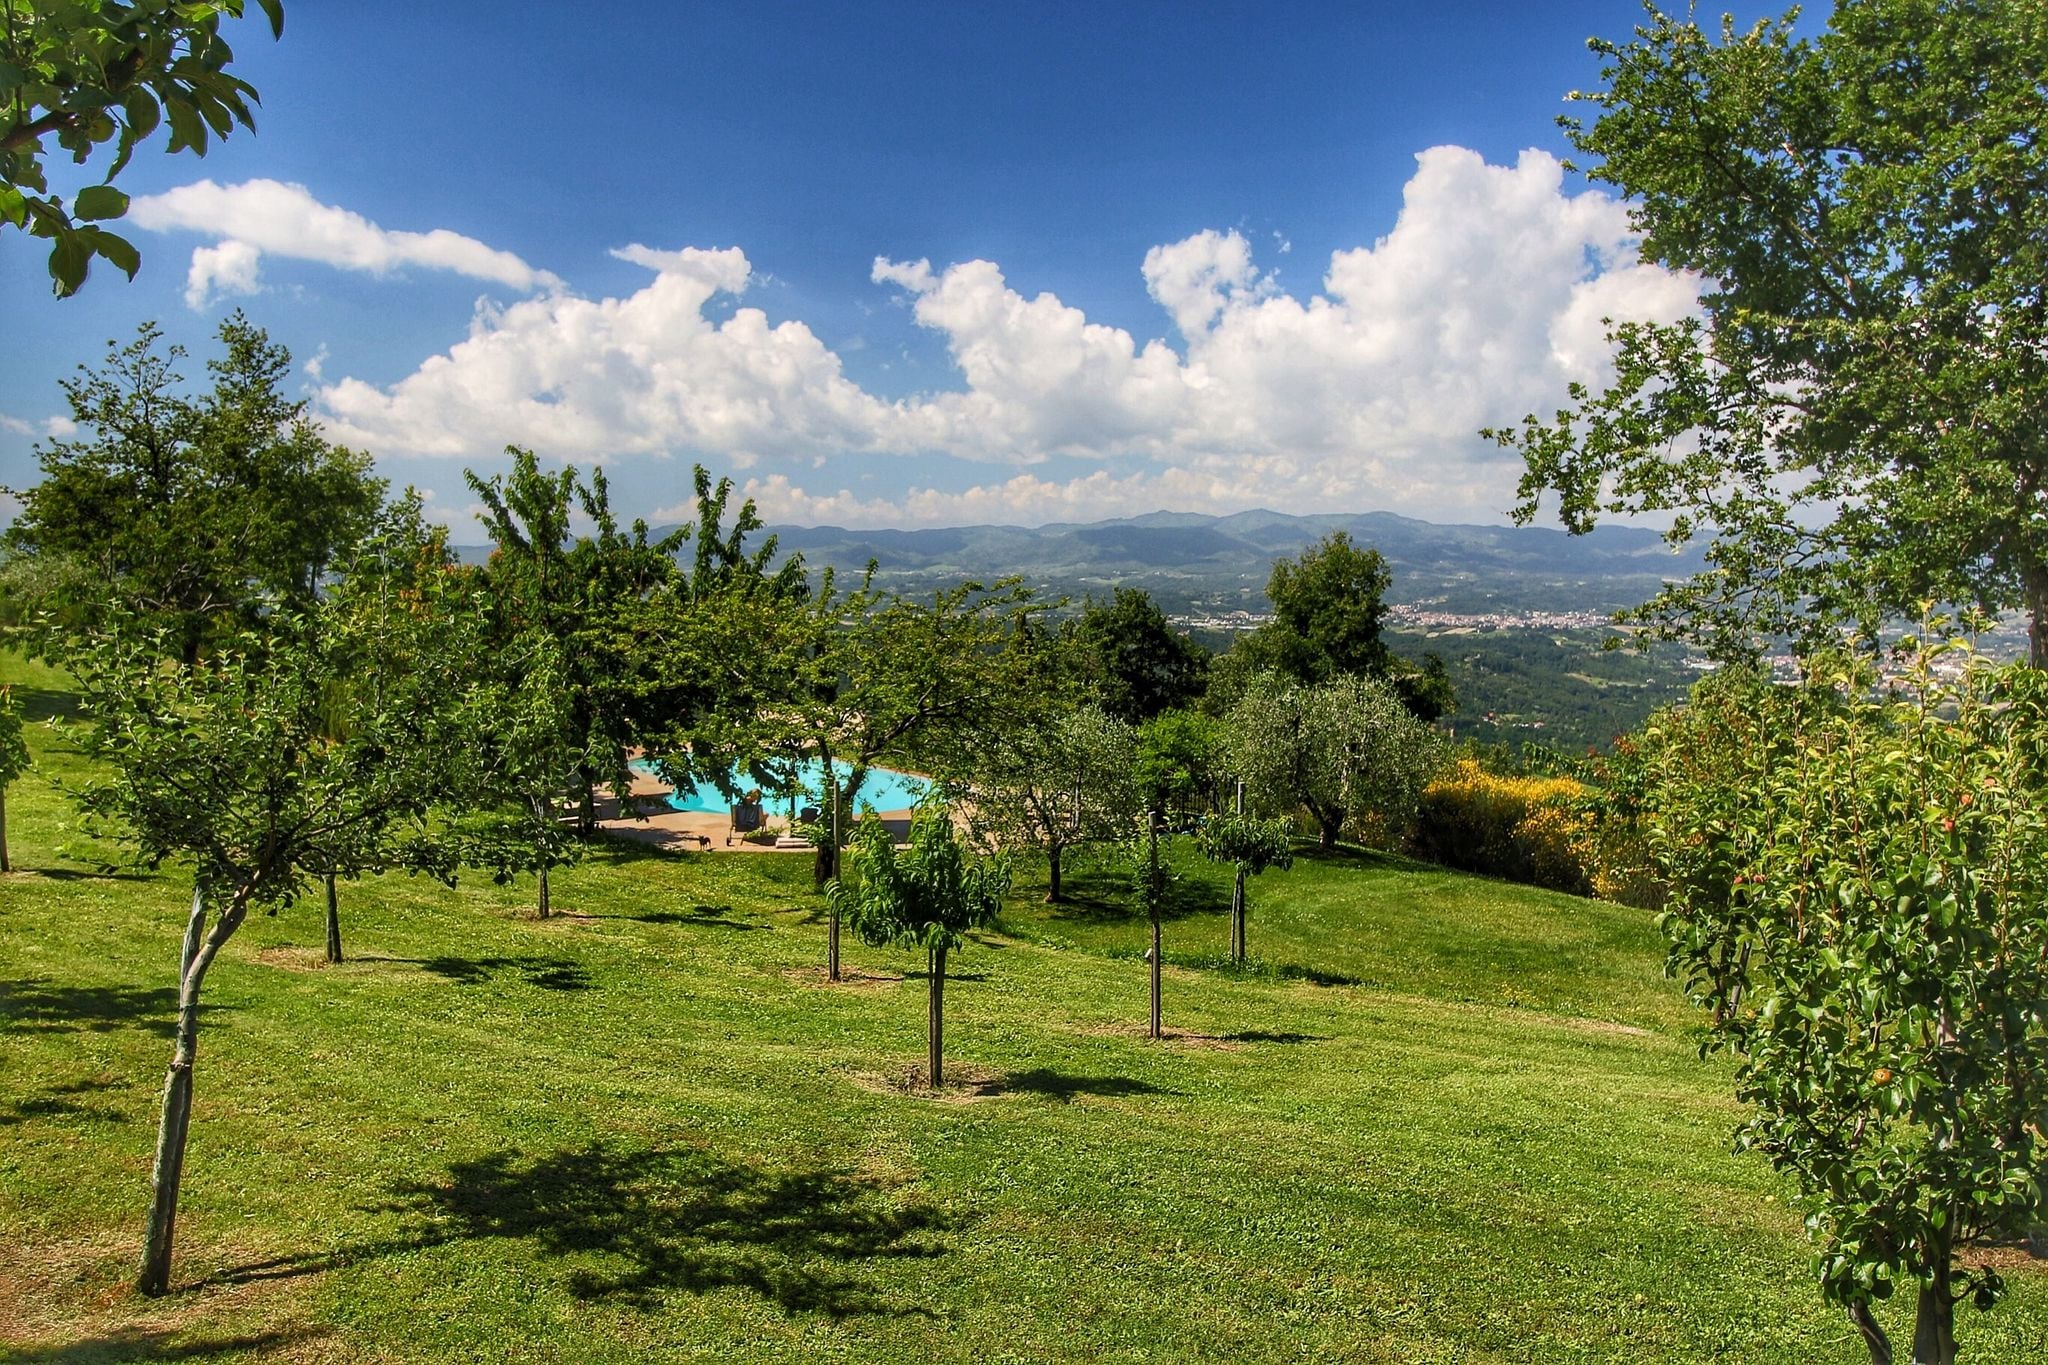 Mooie vrijstaande villa met openluchtzwembad met adembenemend uitzicht